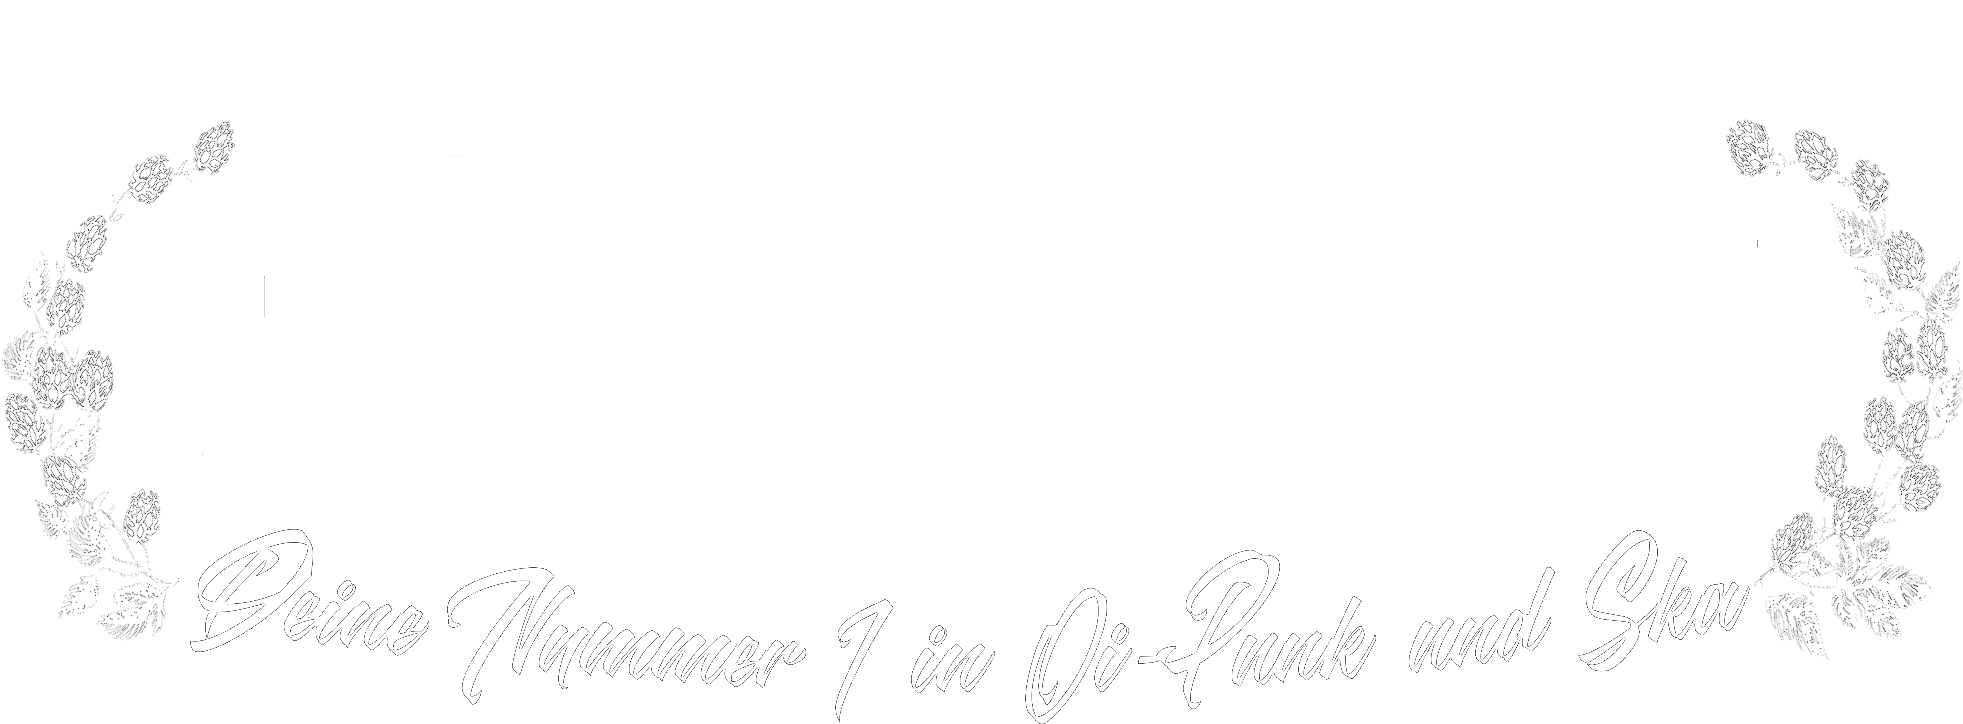 RADIO-ENDSTATION.de